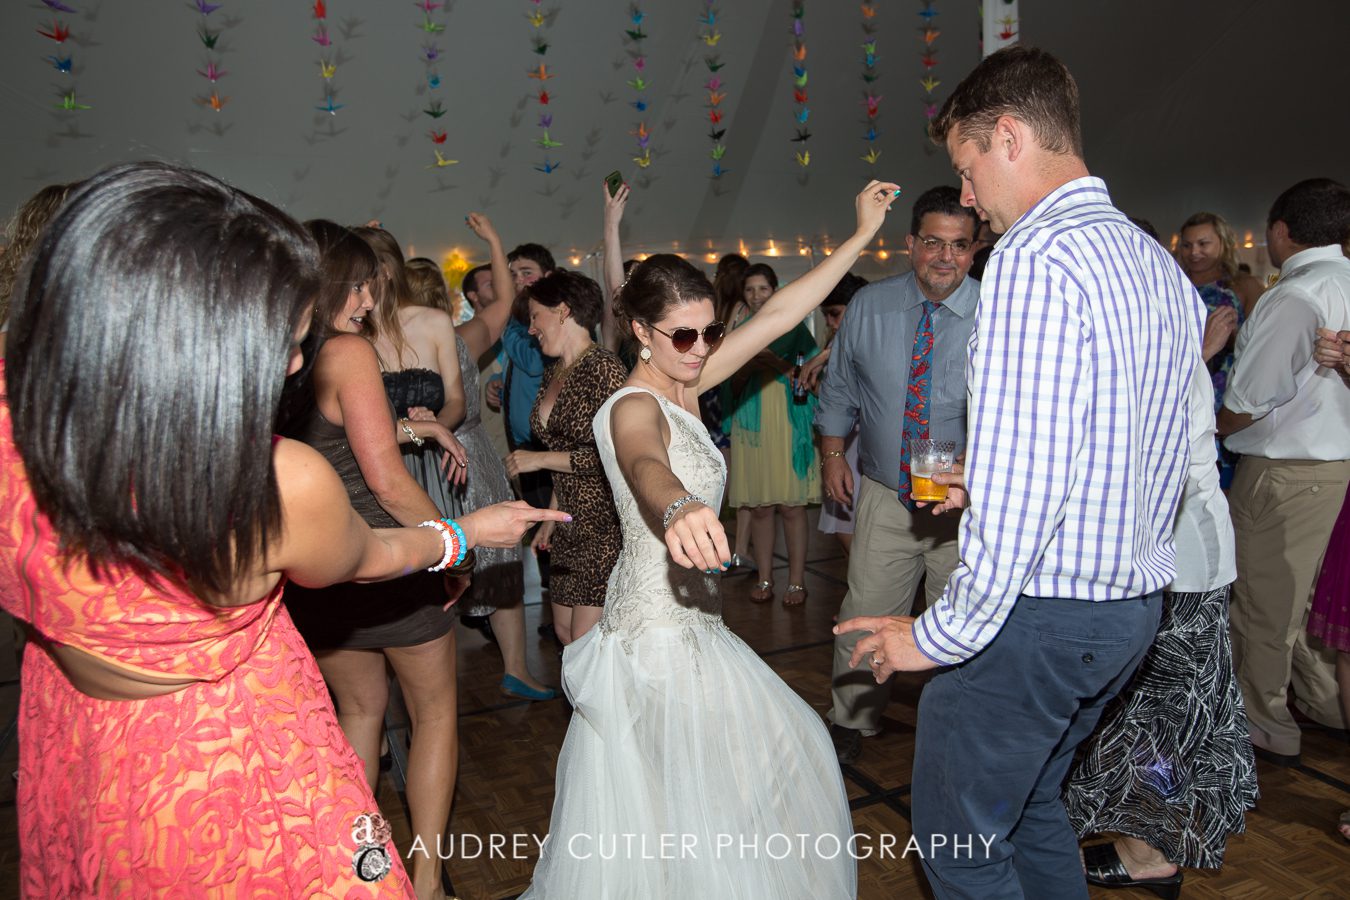 Dennis Port, Massachusetts Wedding Photographers - © Audrey Cutler Photography 2014